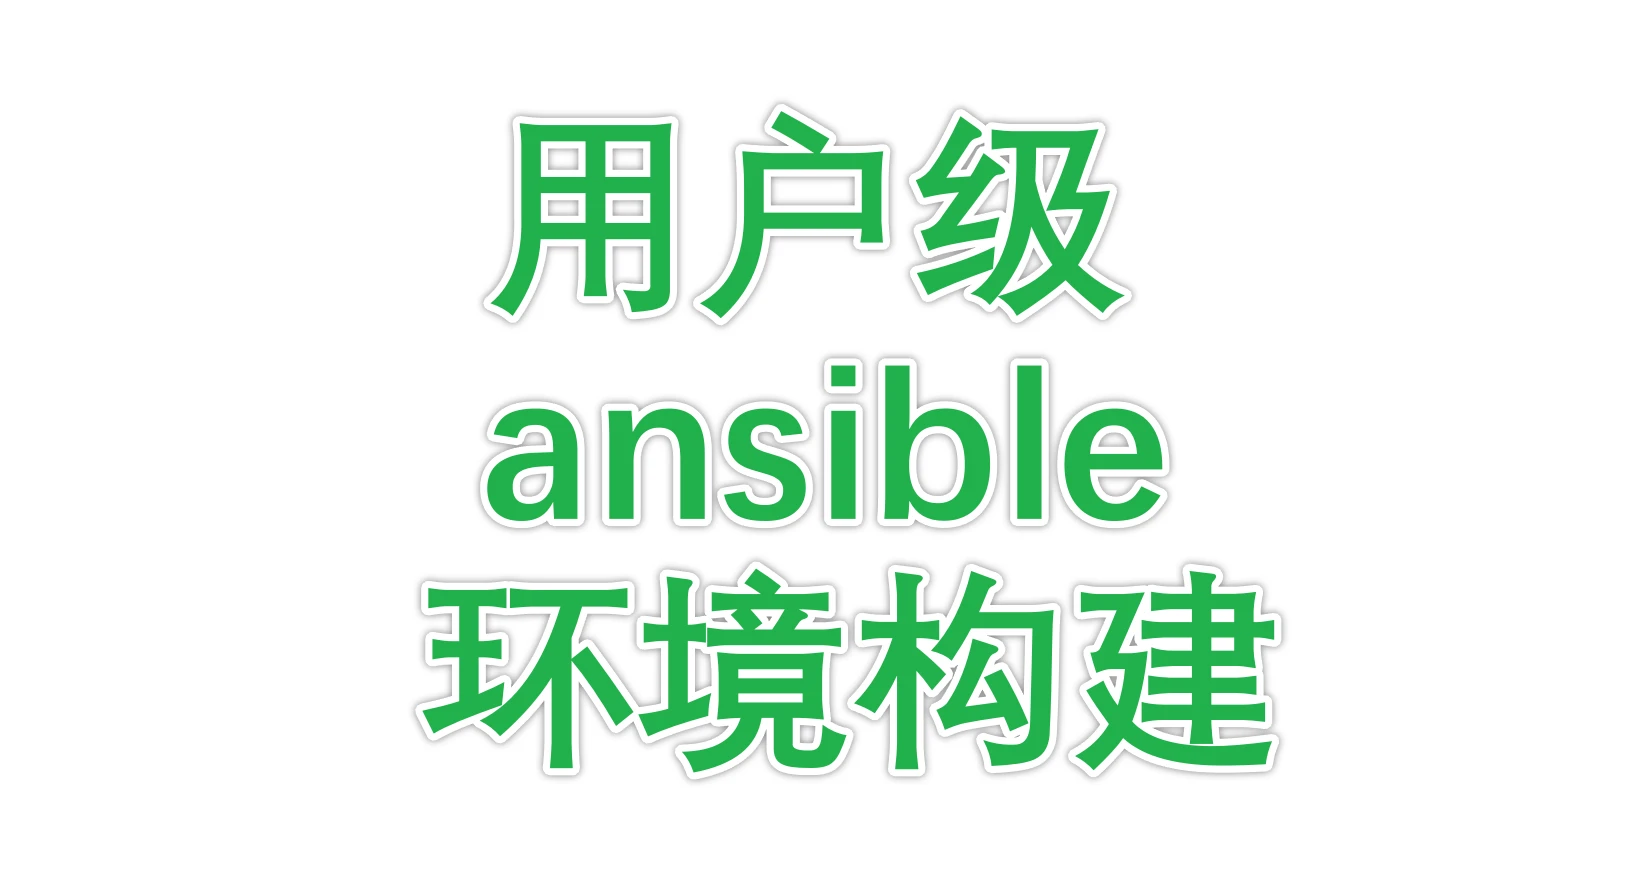 用户级ansible环境构建